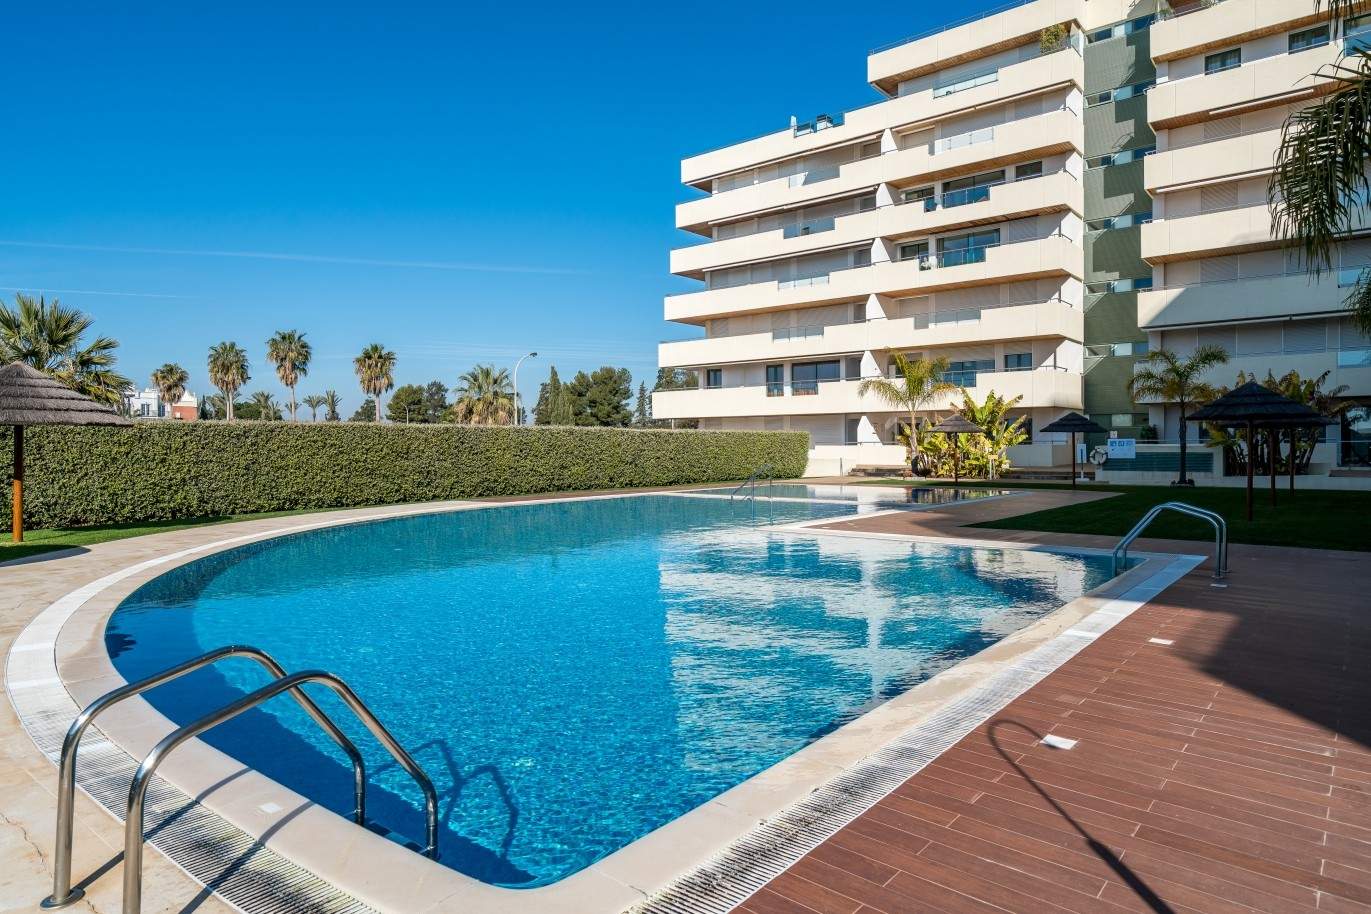 Wohnung zum Verkauf mit Schwimmbad, nah am Strand, Marina Vilamoura, Algarve, Portugal_74091